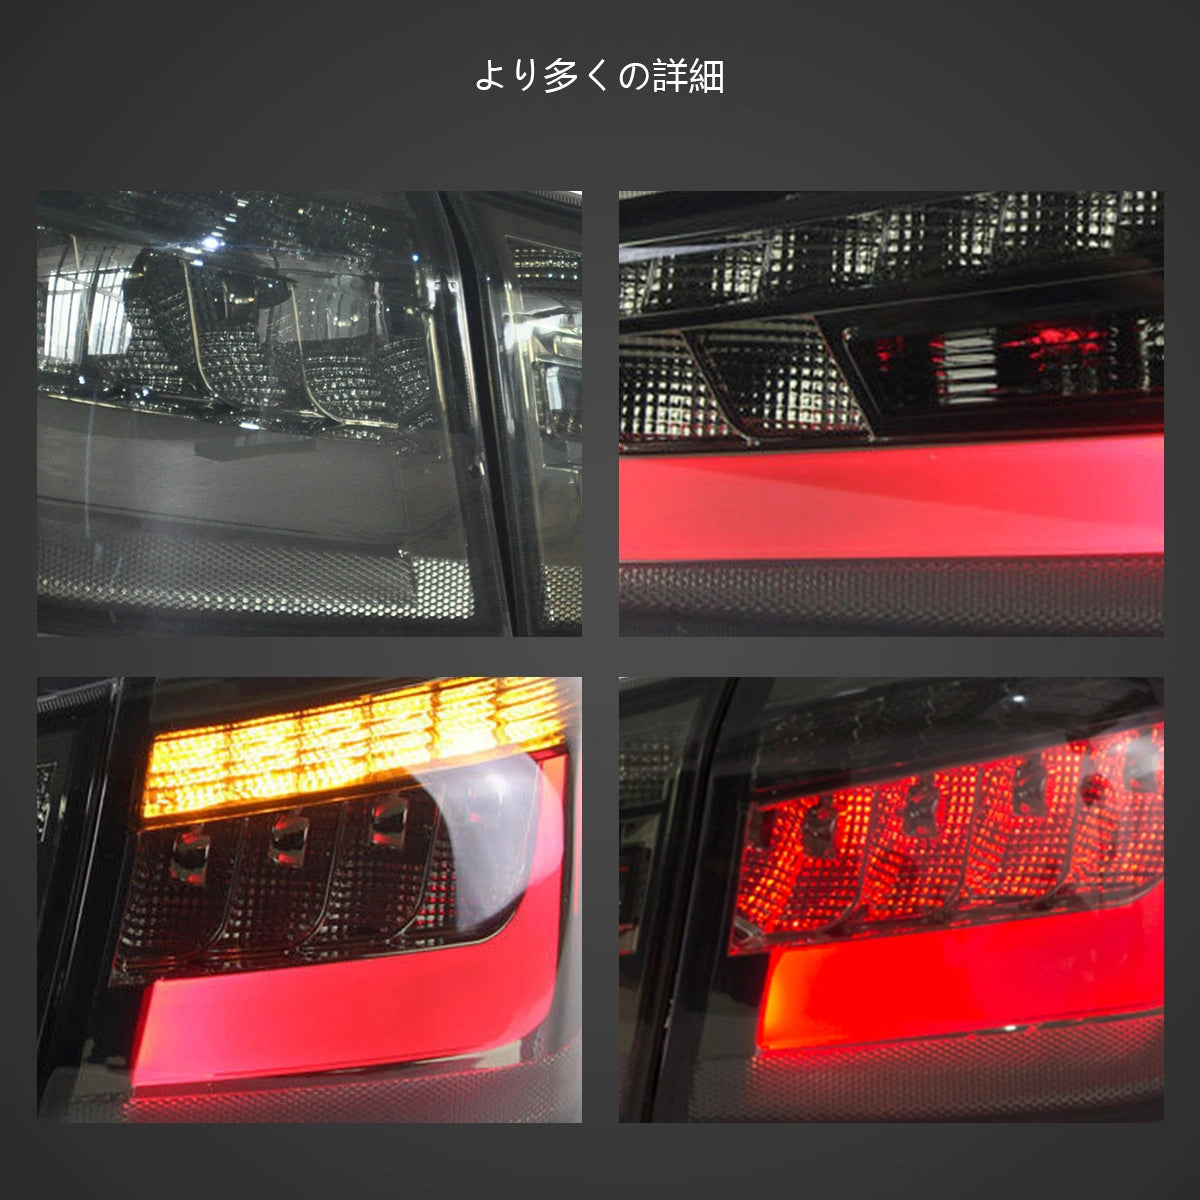 12-22 Mitsubishi ASX Vland LED Tail Lamp (Amber Turn Signal)